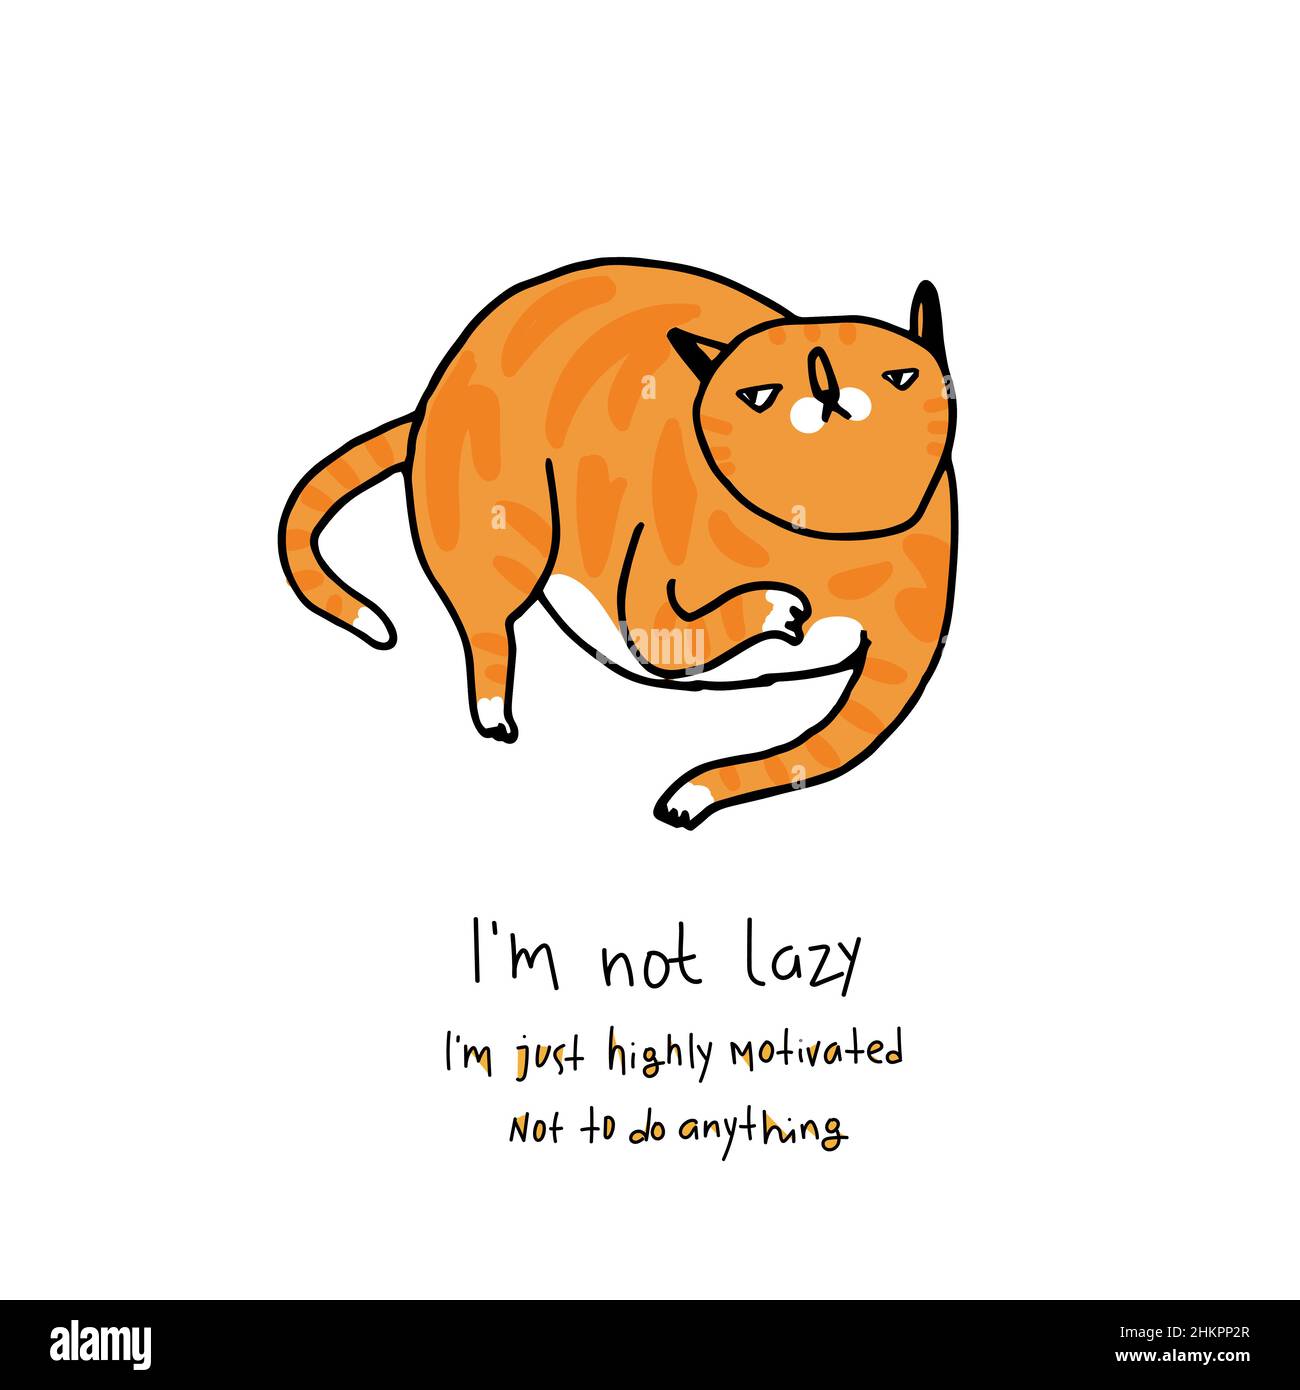 Zenzero gatto pigro mentare. Simpatico personaggio gatto rosso in stile fumetto. Carismatica illustrazione di gattino grasso con testo di scritta di citazione di scherzo a den Illustrazione Vettoriale